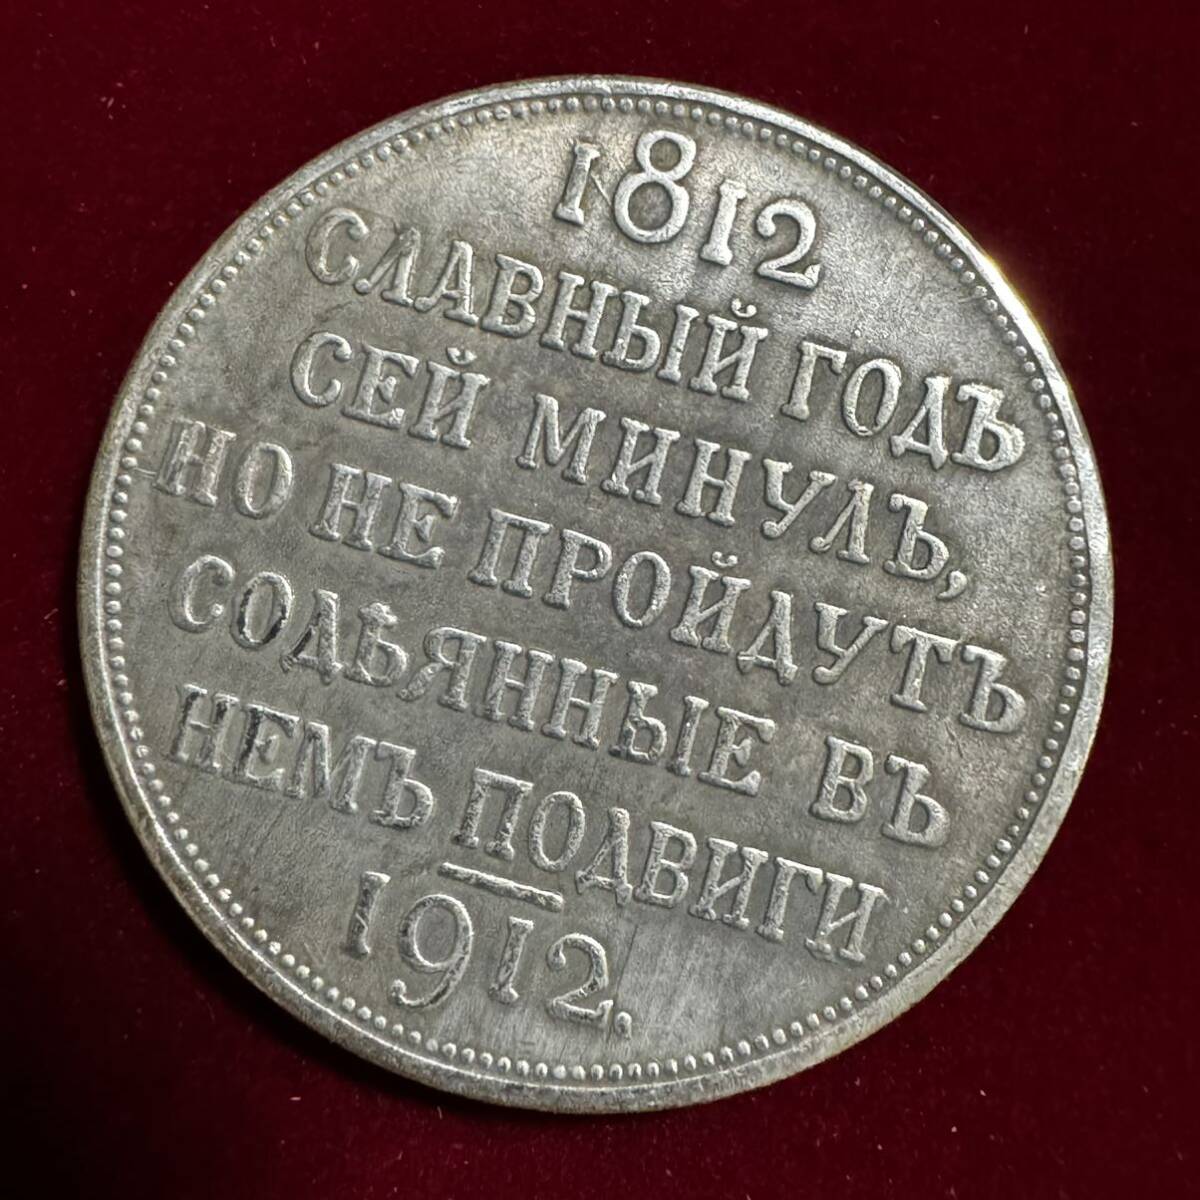 ロシア帝国 硬貨 古銭 1812年の愛国戦争 1912年 フランス帝国侵攻 100周年記念 国章 ルーブル コイン 銀貨 外国古銭 海外硬貨の画像2